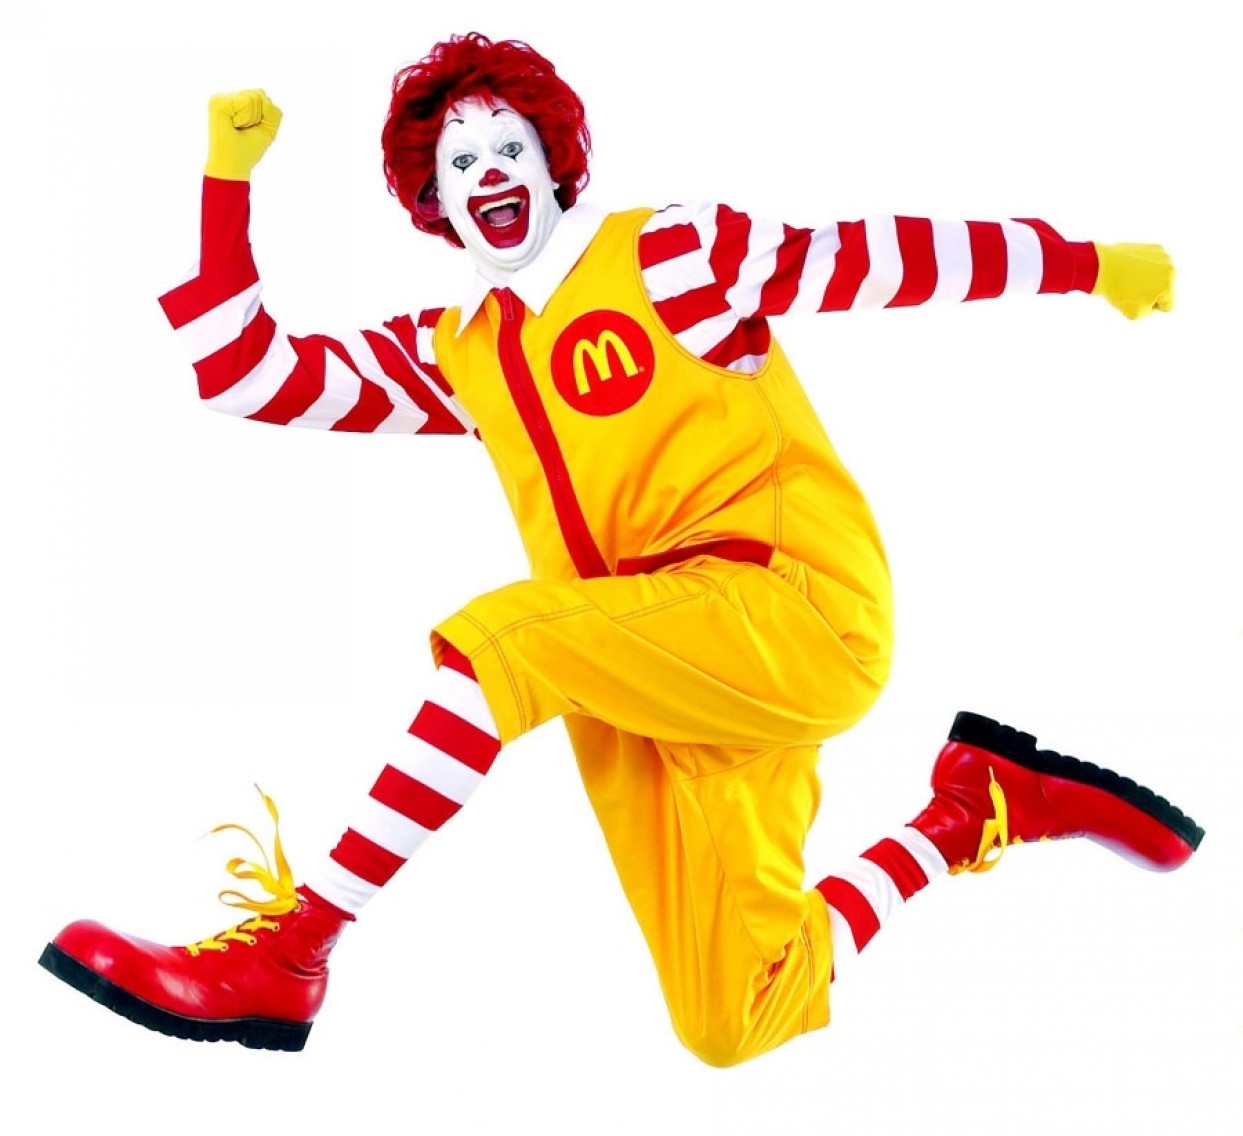 McDonald's I'd hit it kampanyası